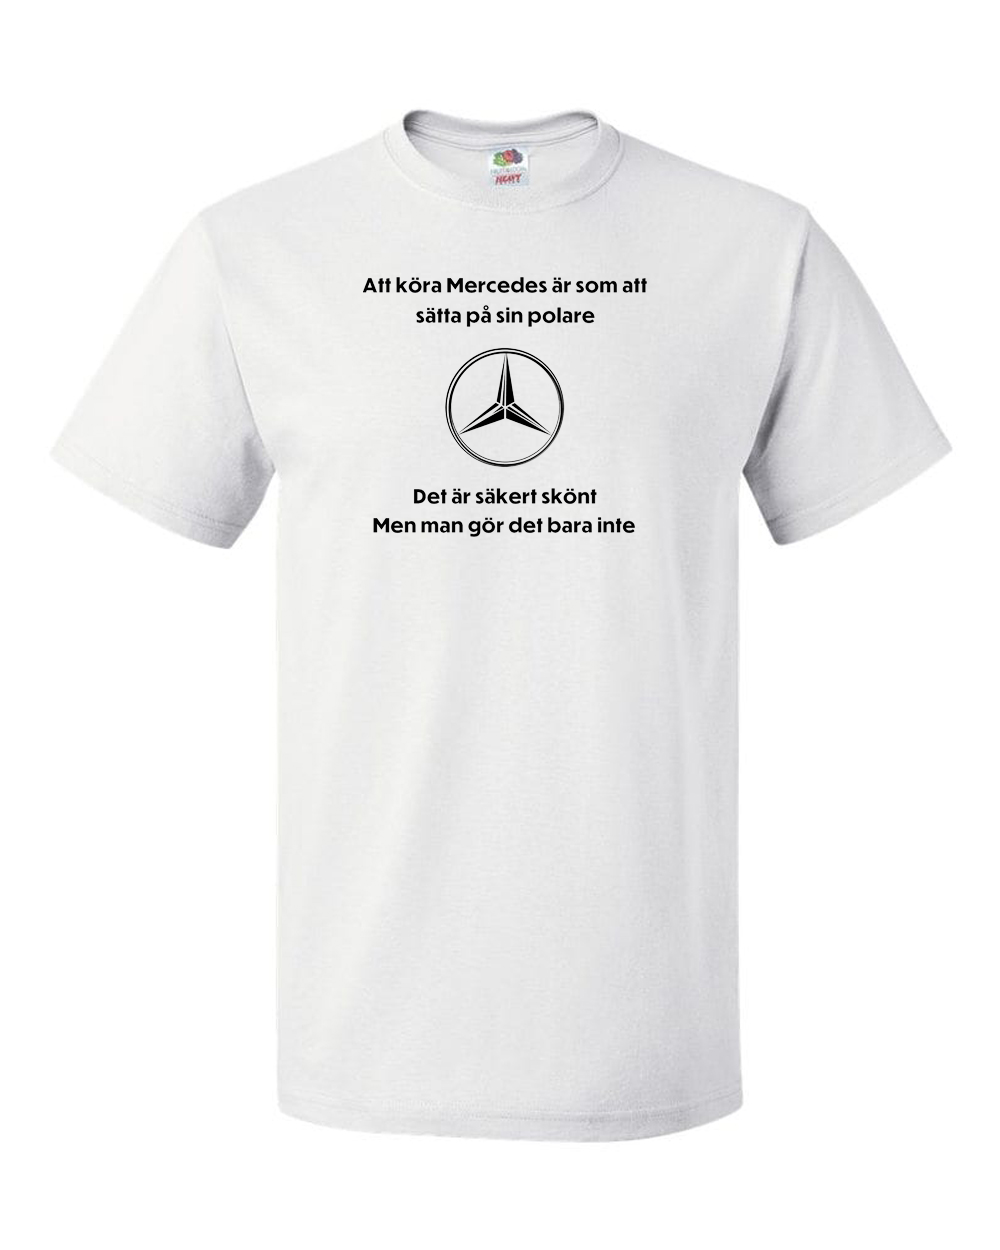 En rolig t-shirt i humorns tecken tryckt på en t-shirt av bra kvalitet. både vit och svart färg finns att köpa. skaffa en idag.